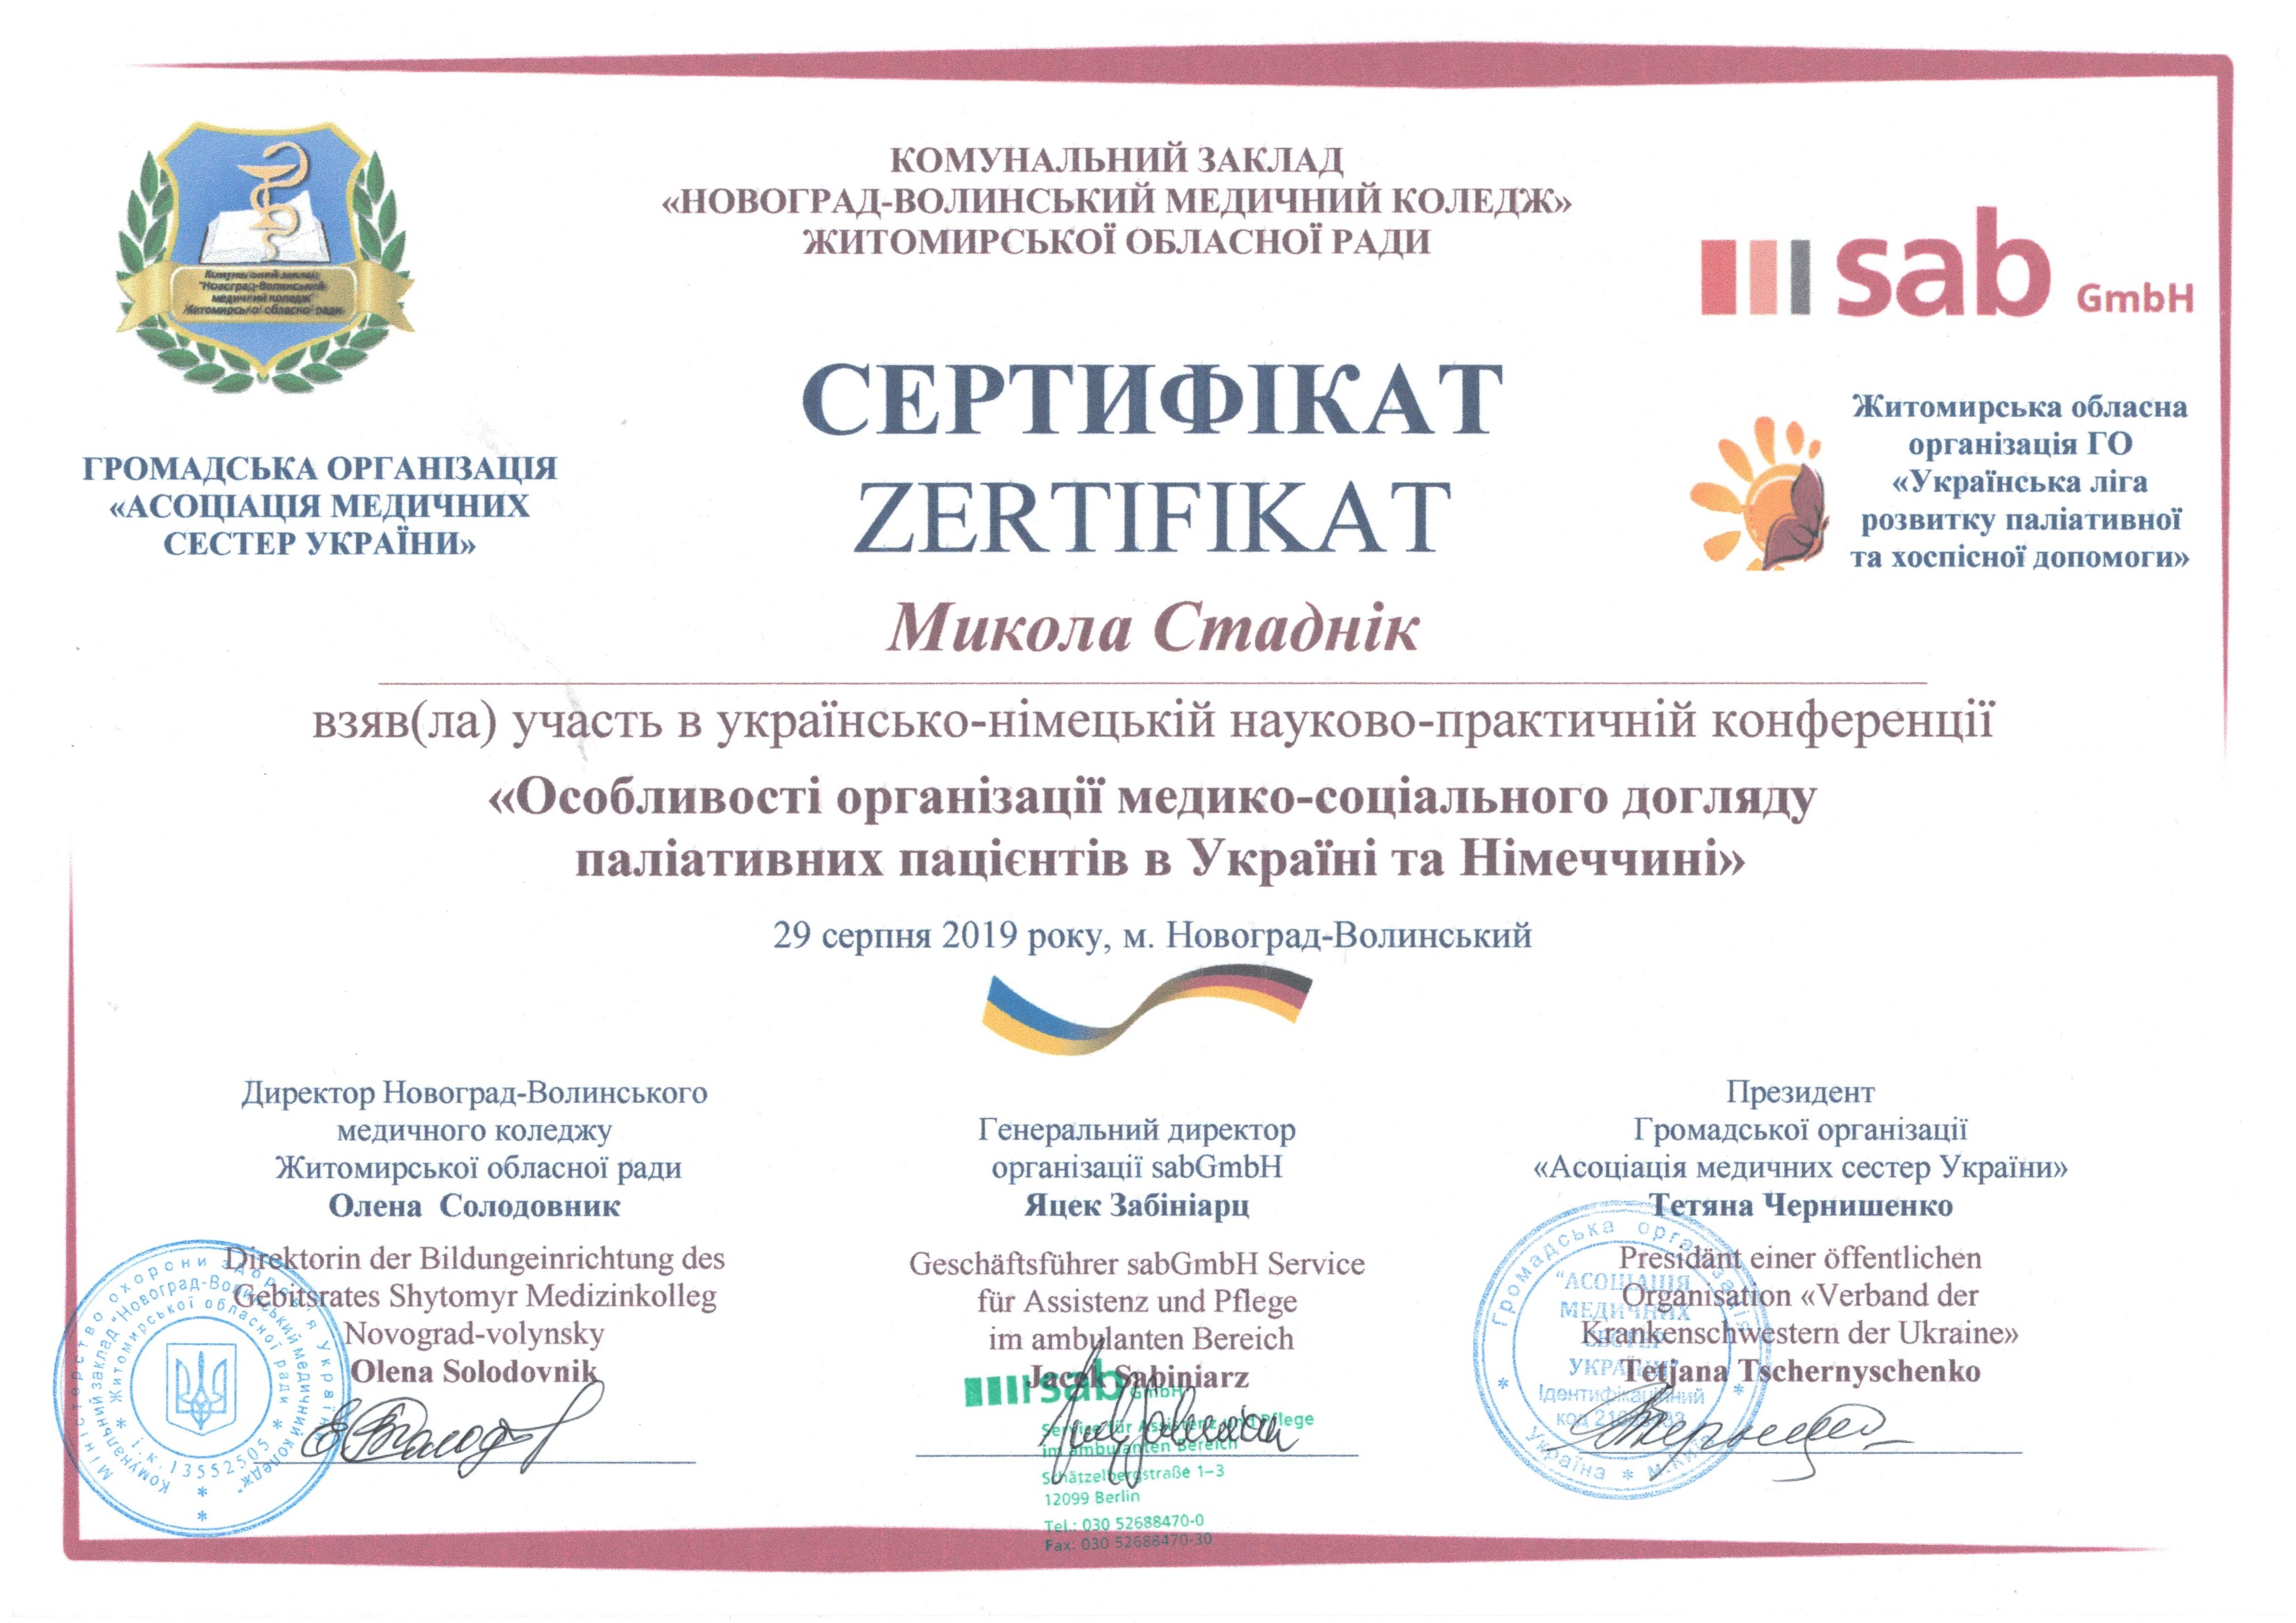 Українсько-німецька науково-практична конференція «Особливості організації медико-соціального догляду паліативних пацієнтів в Україні та Німеччині»